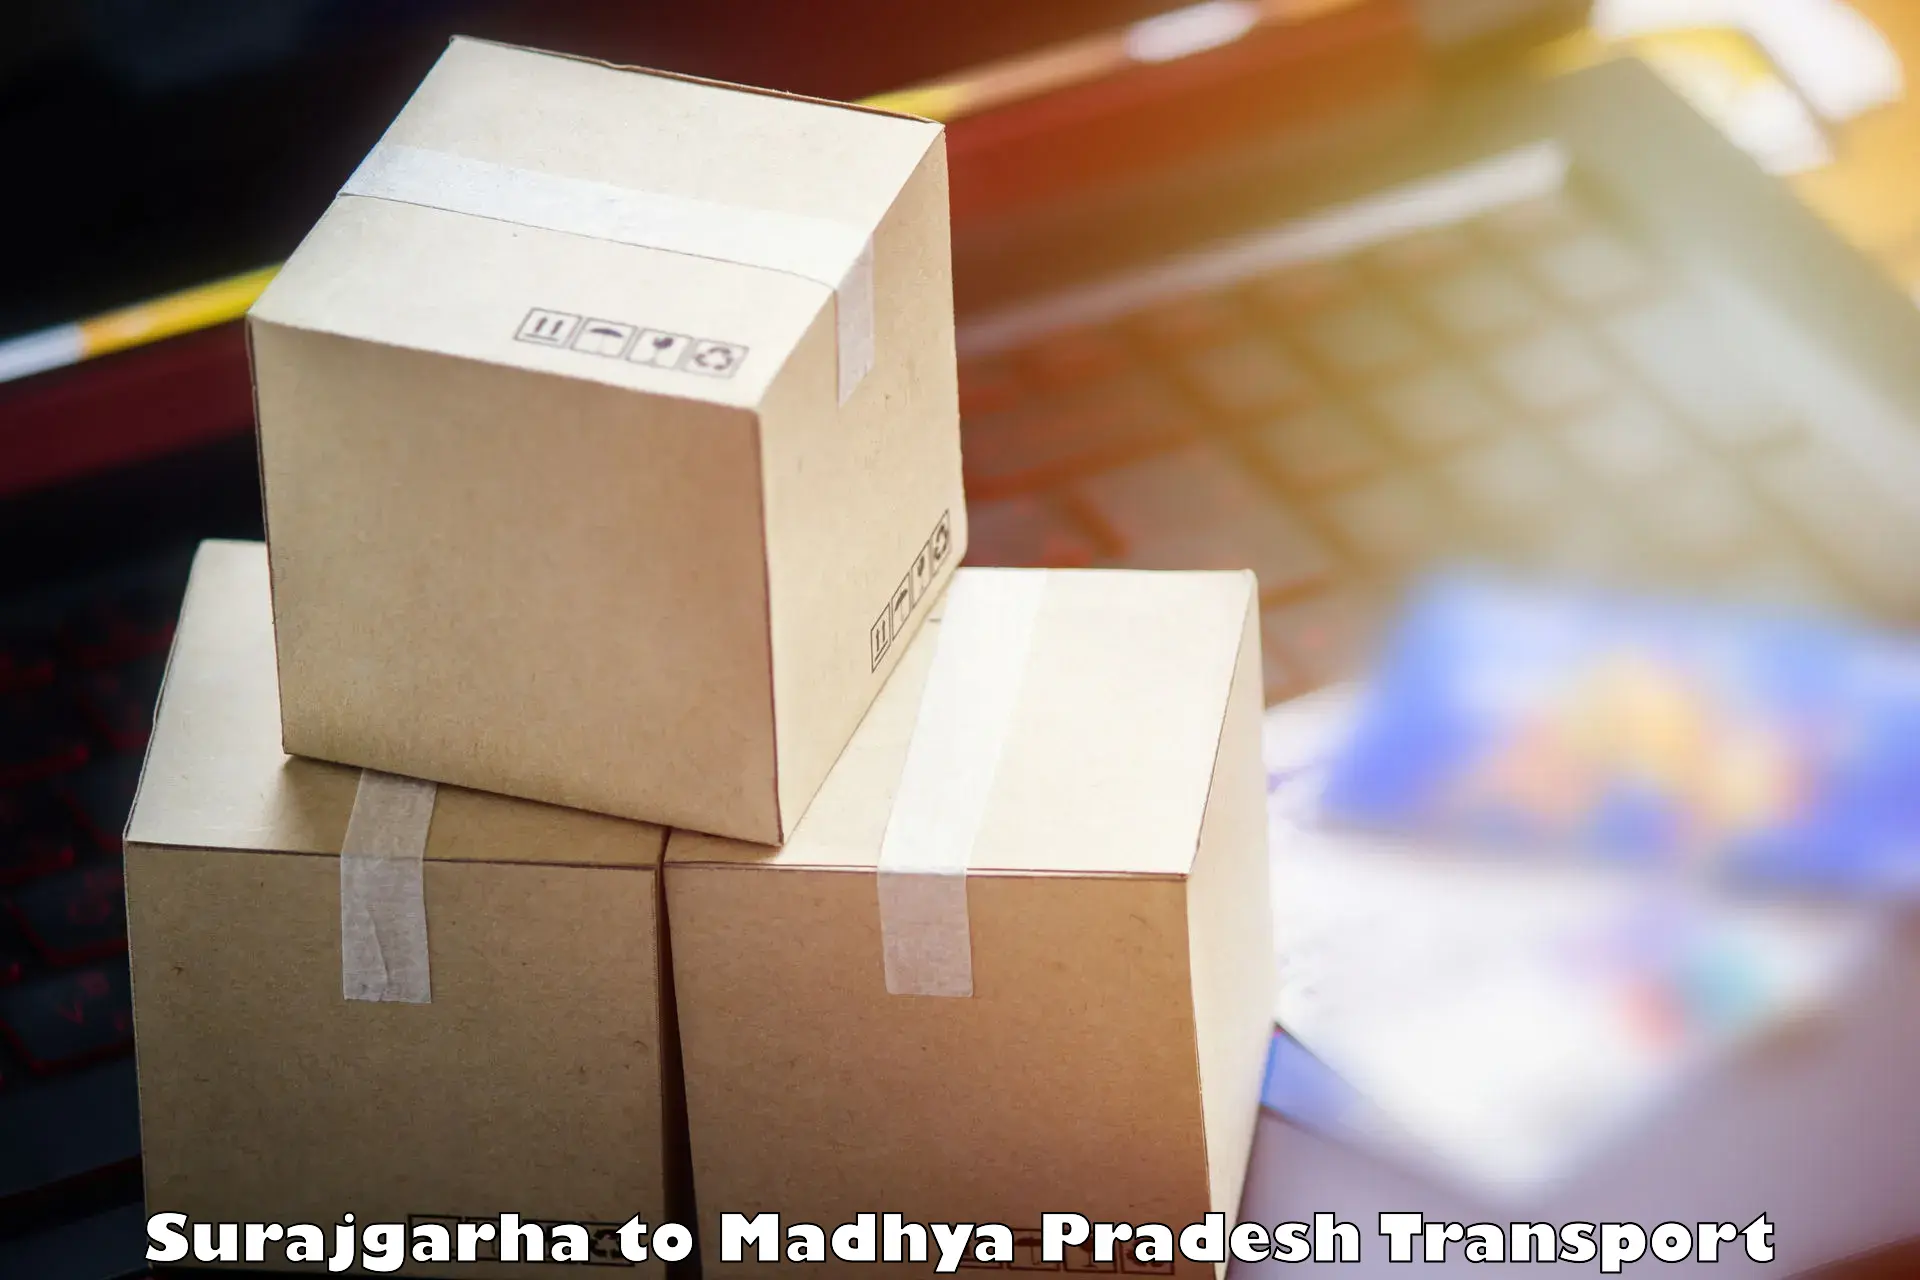 Shipping partner Surajgarha to NIT Bhopal